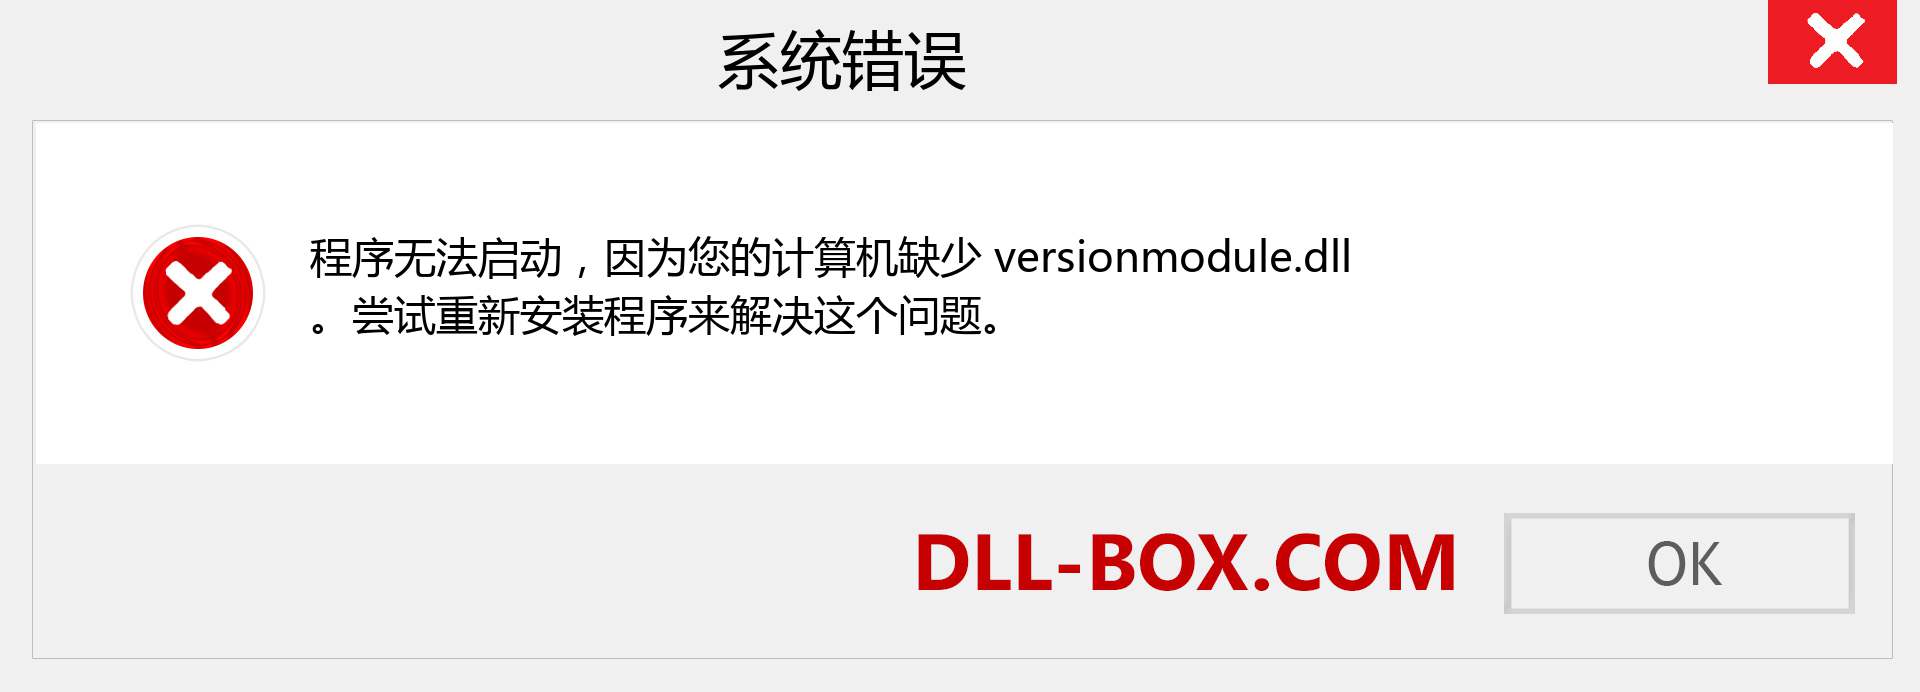 versionmodule.dll 文件丢失？。 适用于 Windows 7、8、10 的下载 - 修复 Windows、照片、图像上的 versionmodule dll 丢失错误